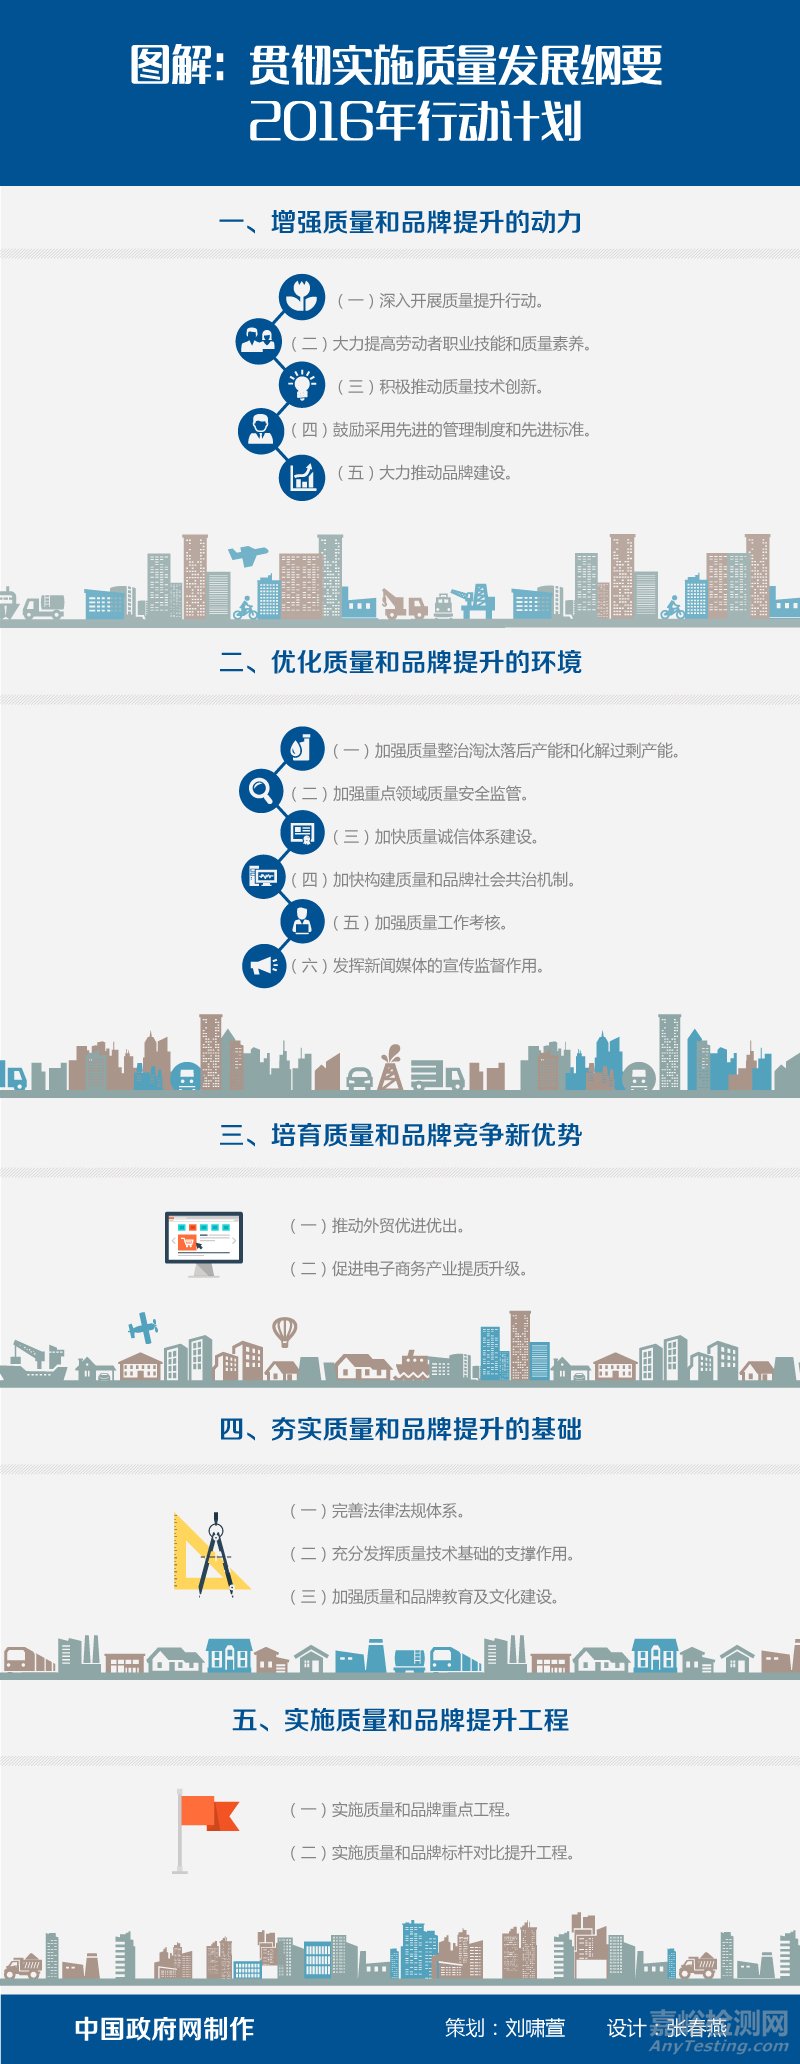 中国质量发展纲要2016年计划 有利于检测行业发展